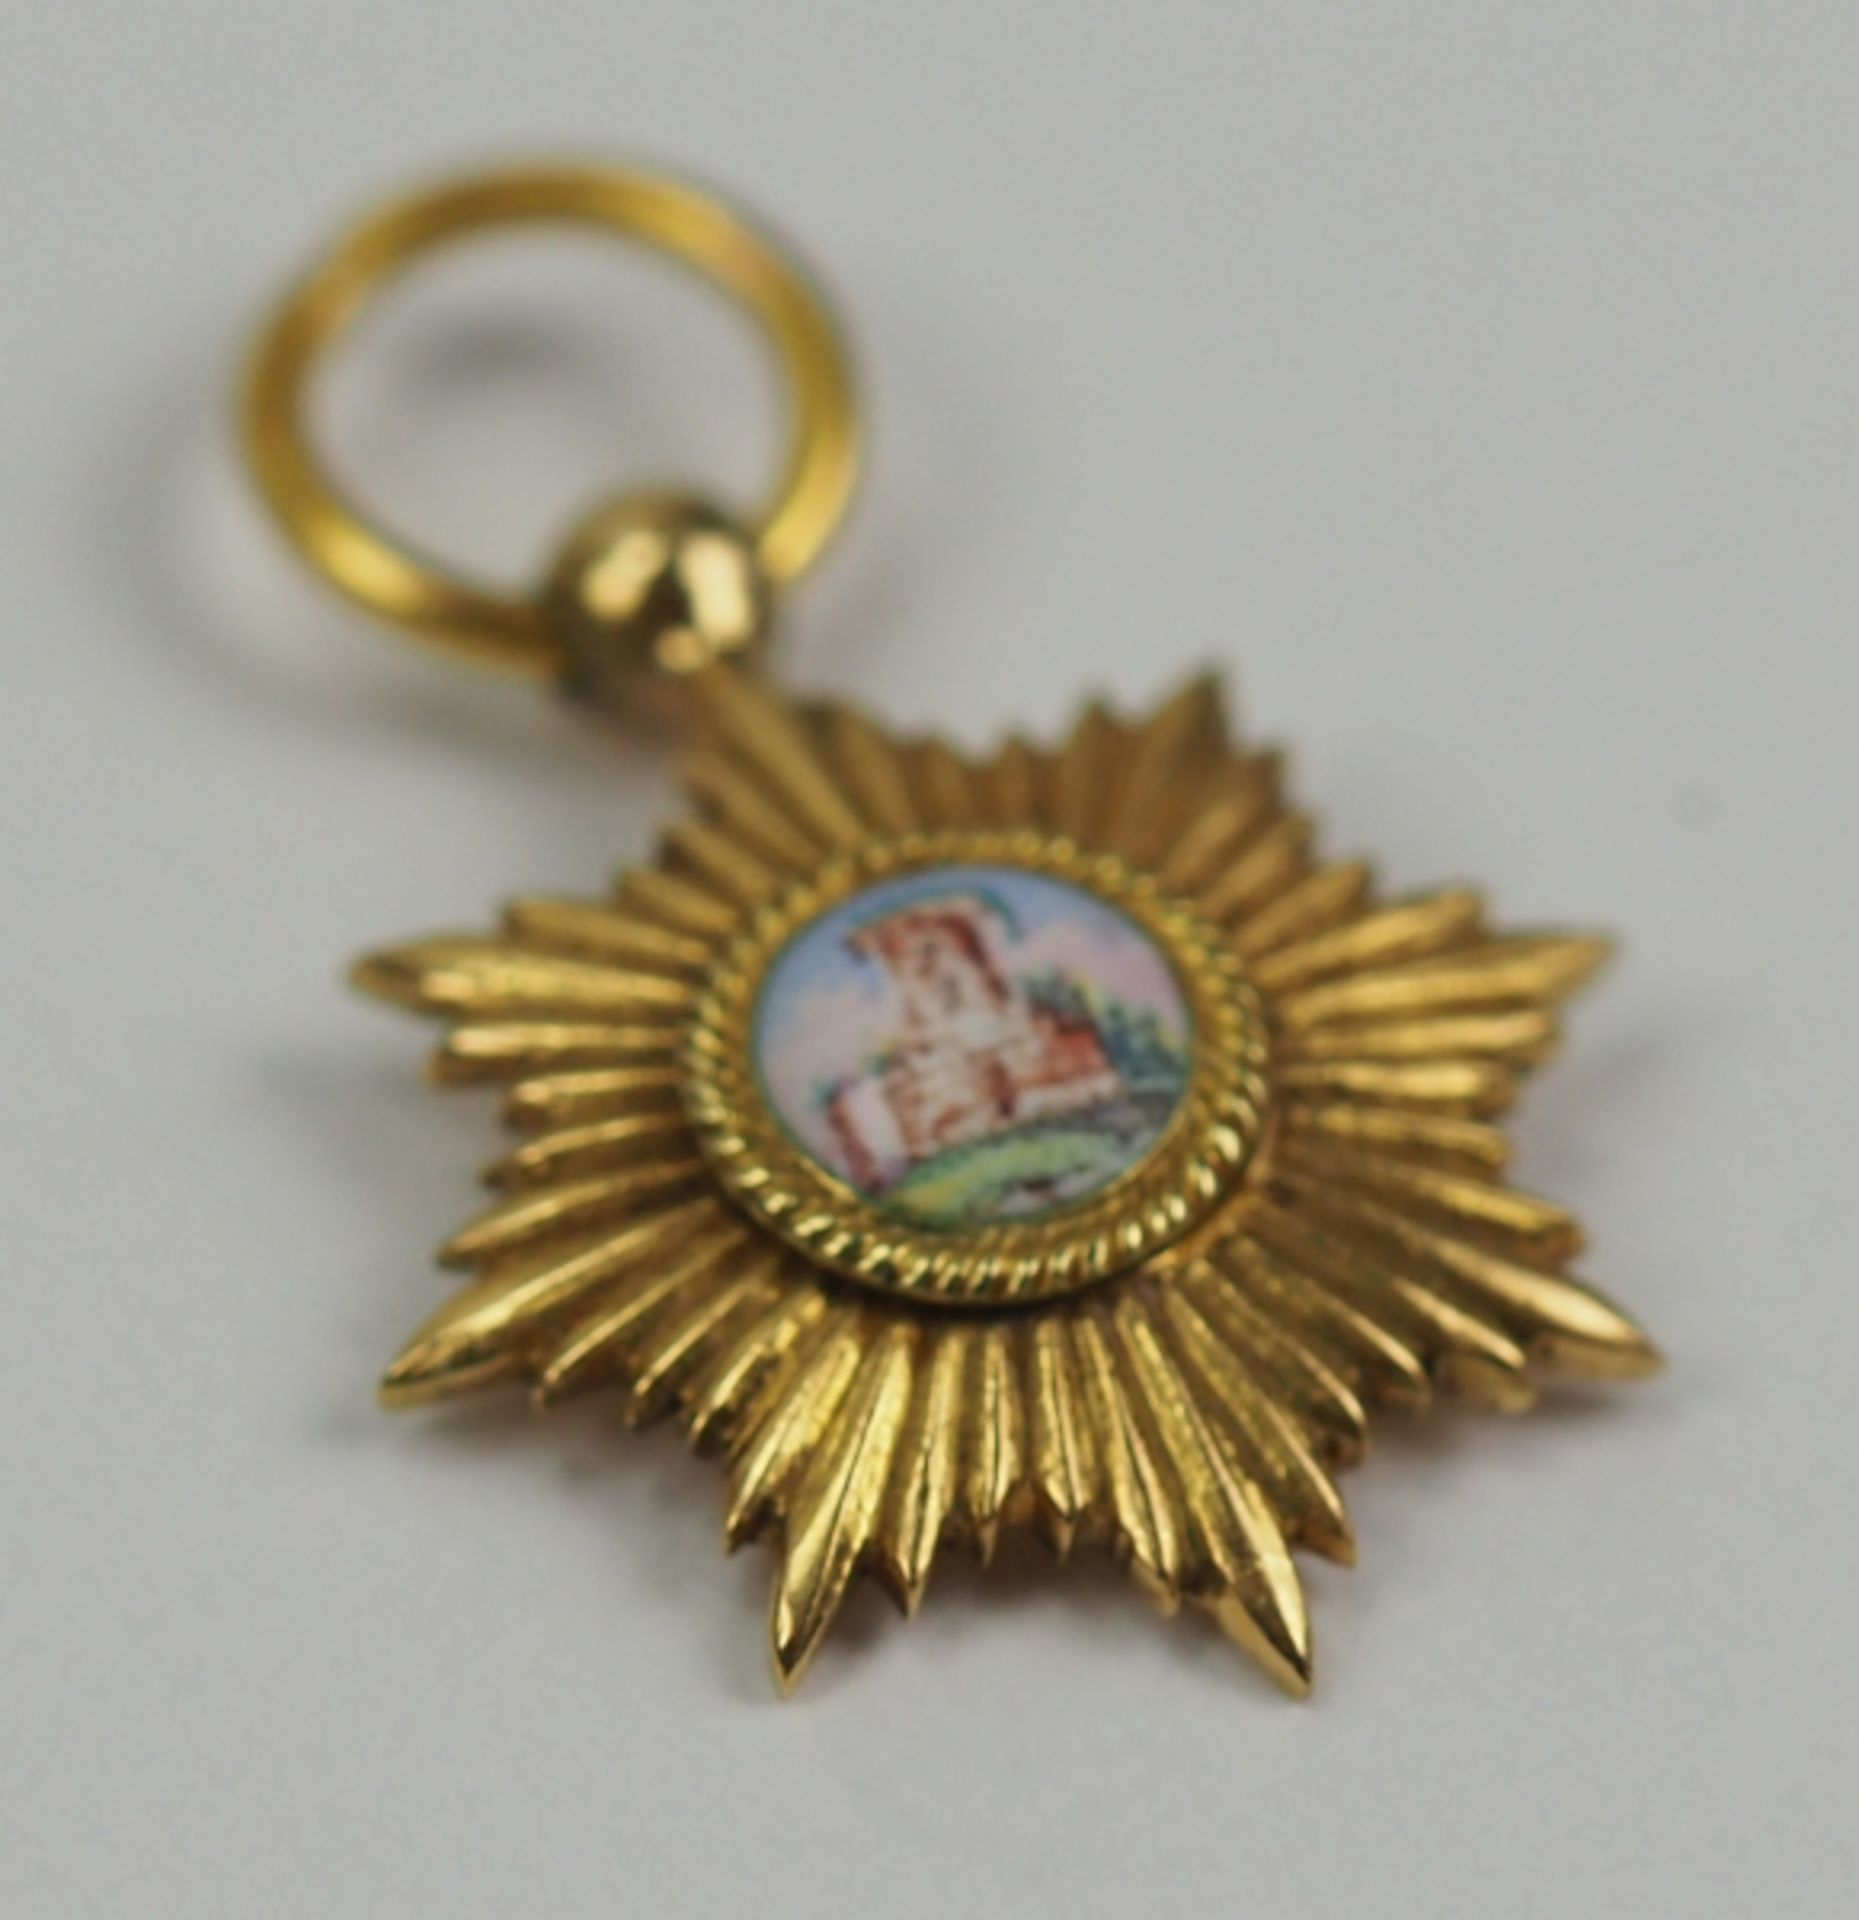 Baden: Großherzoglicher Orden vom Zähringer Löwen, Großkreuz Stern Miniatur.Gold, das Medaillon - Bild 2 aus 4